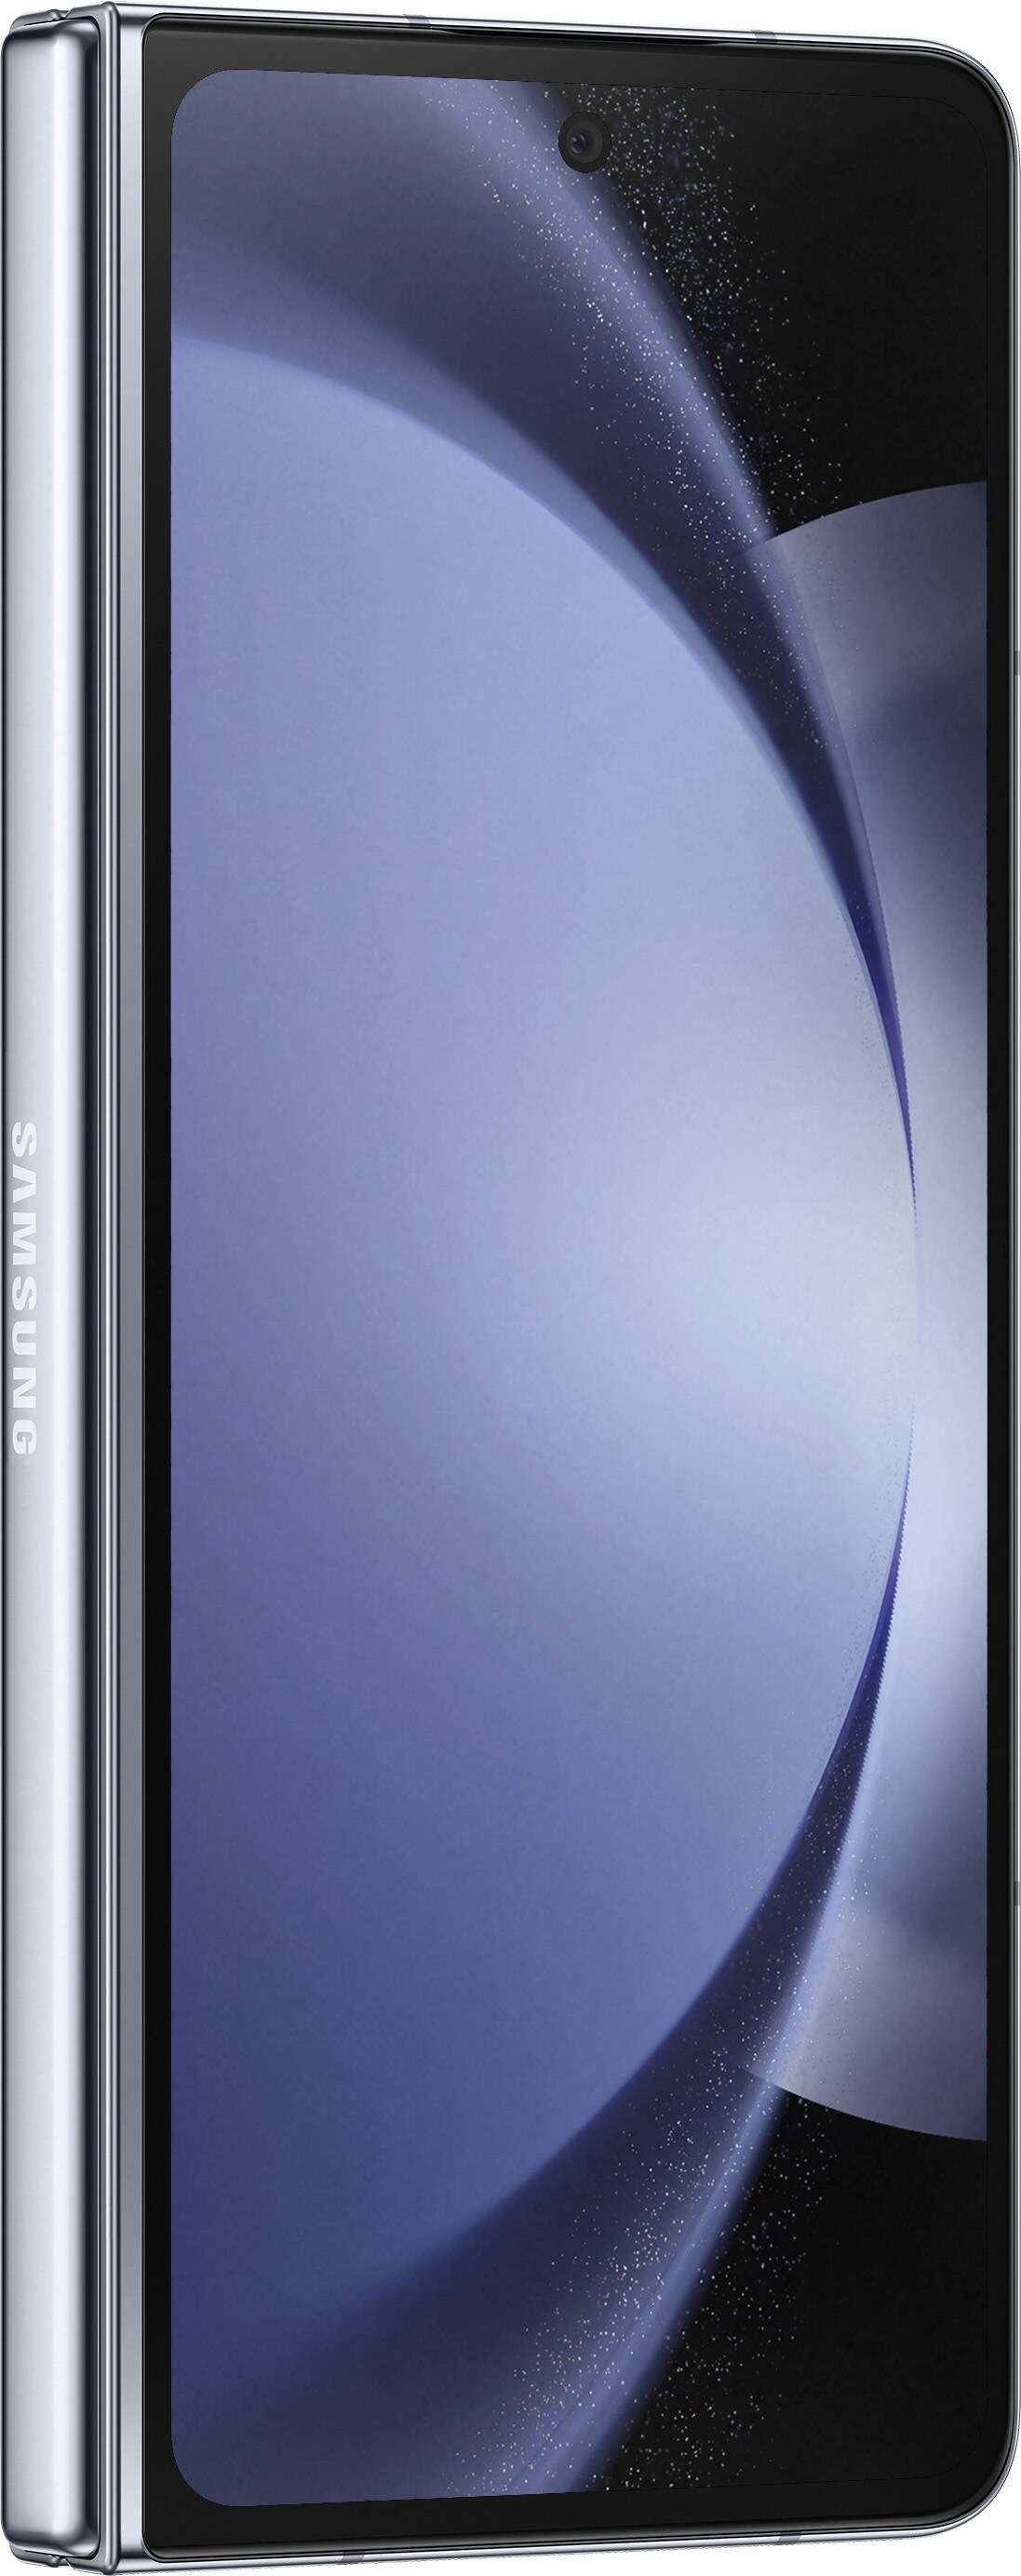 F946B icy 13.0 Smartphone ++ Samsung GALAXY blue Dual-SIM Android Cyberport Z Fold5 256GB 5G